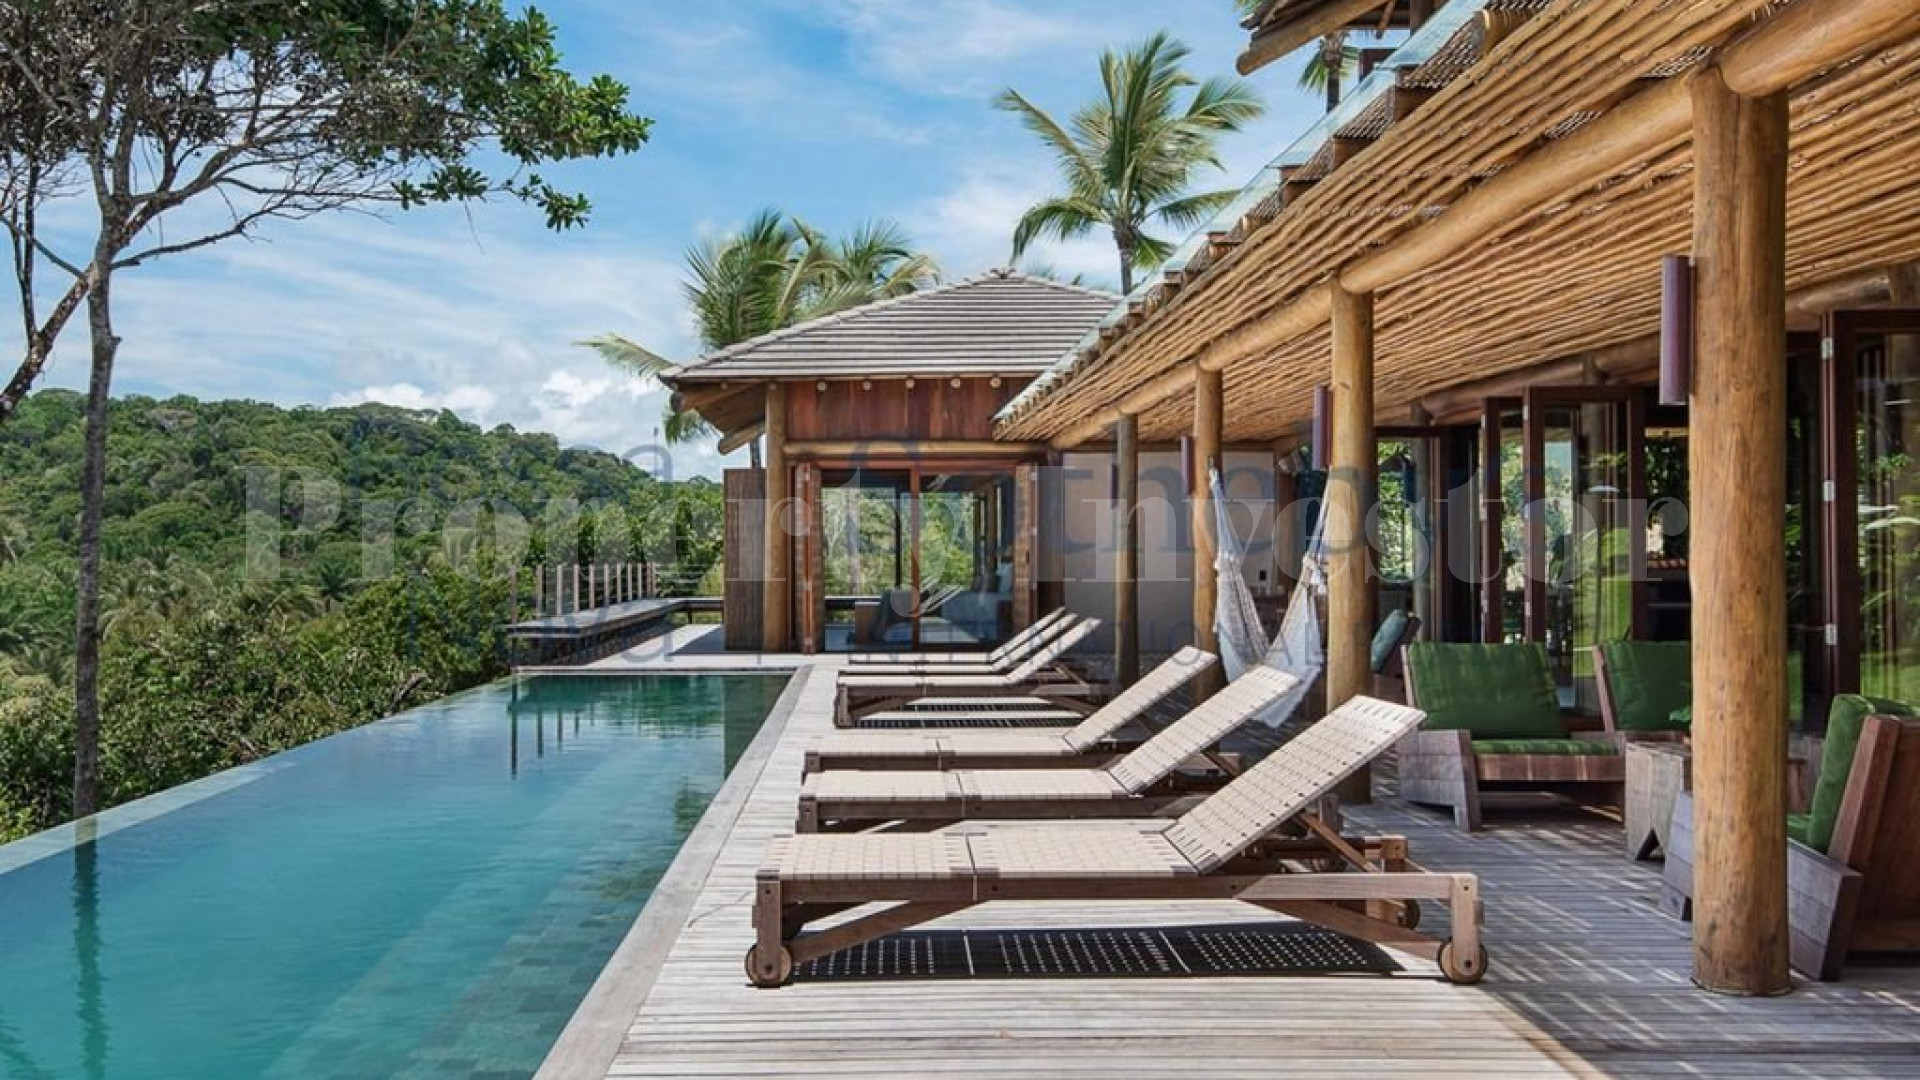 Delightful 6 Bedroom Luxury Oceanfront Resort Villa for Sale in Itacaré, Brazil